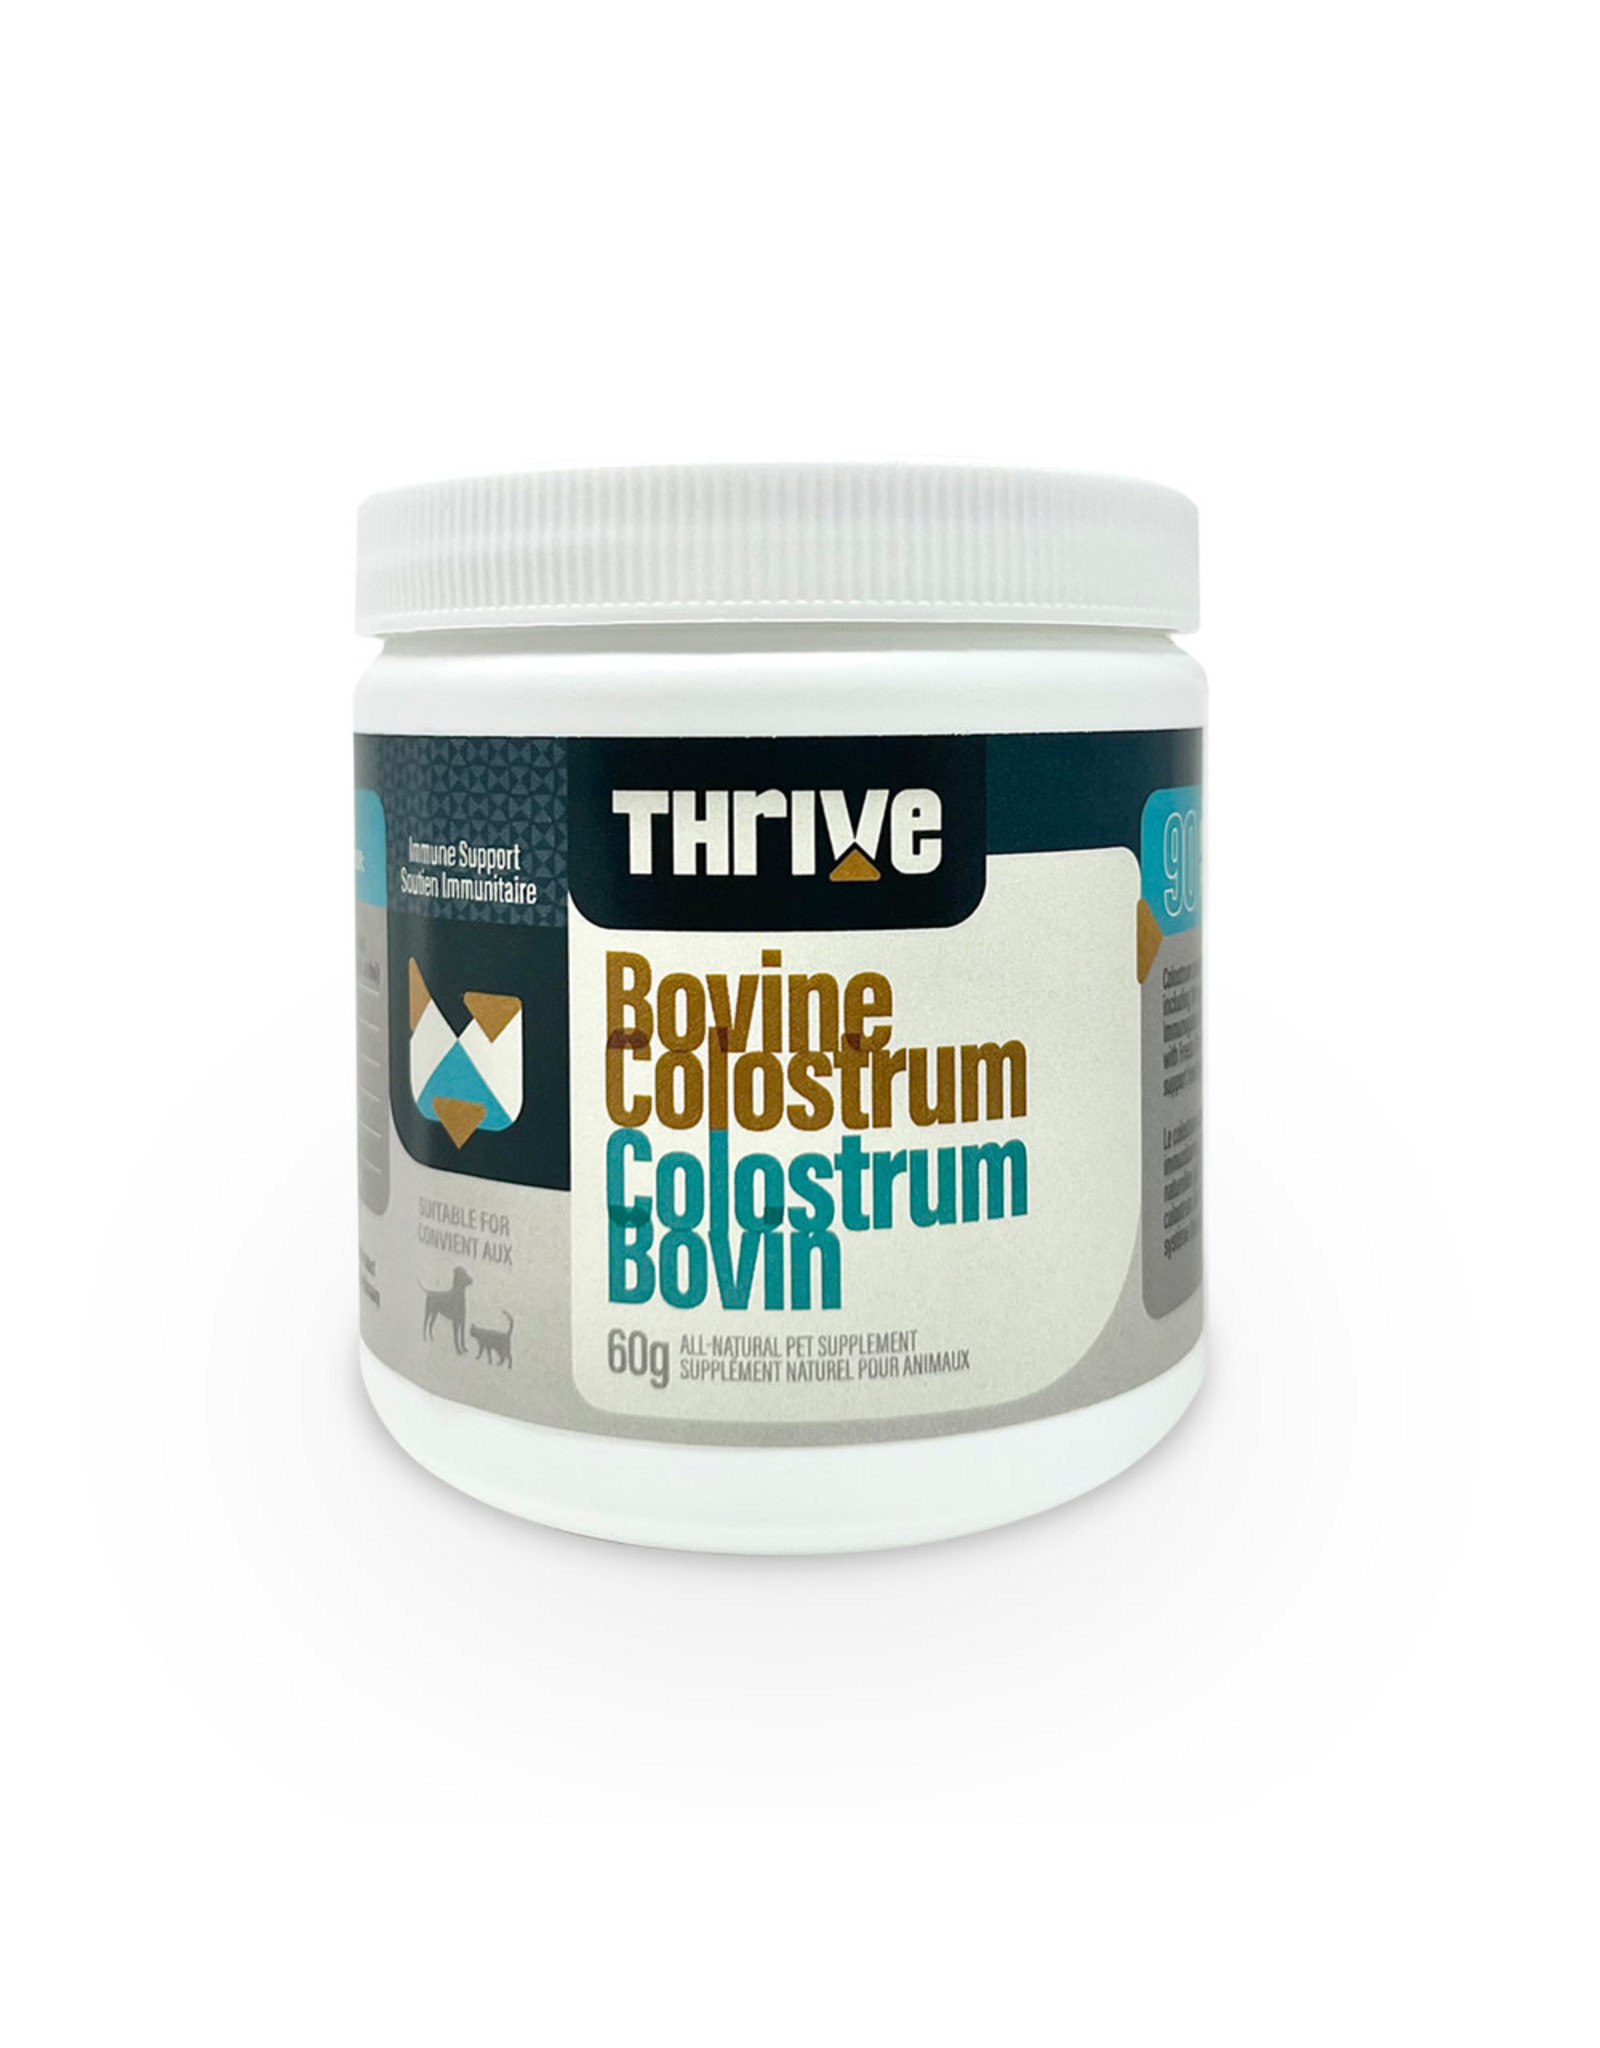 Thrive Thrive poudre de colostrum bovin 60g